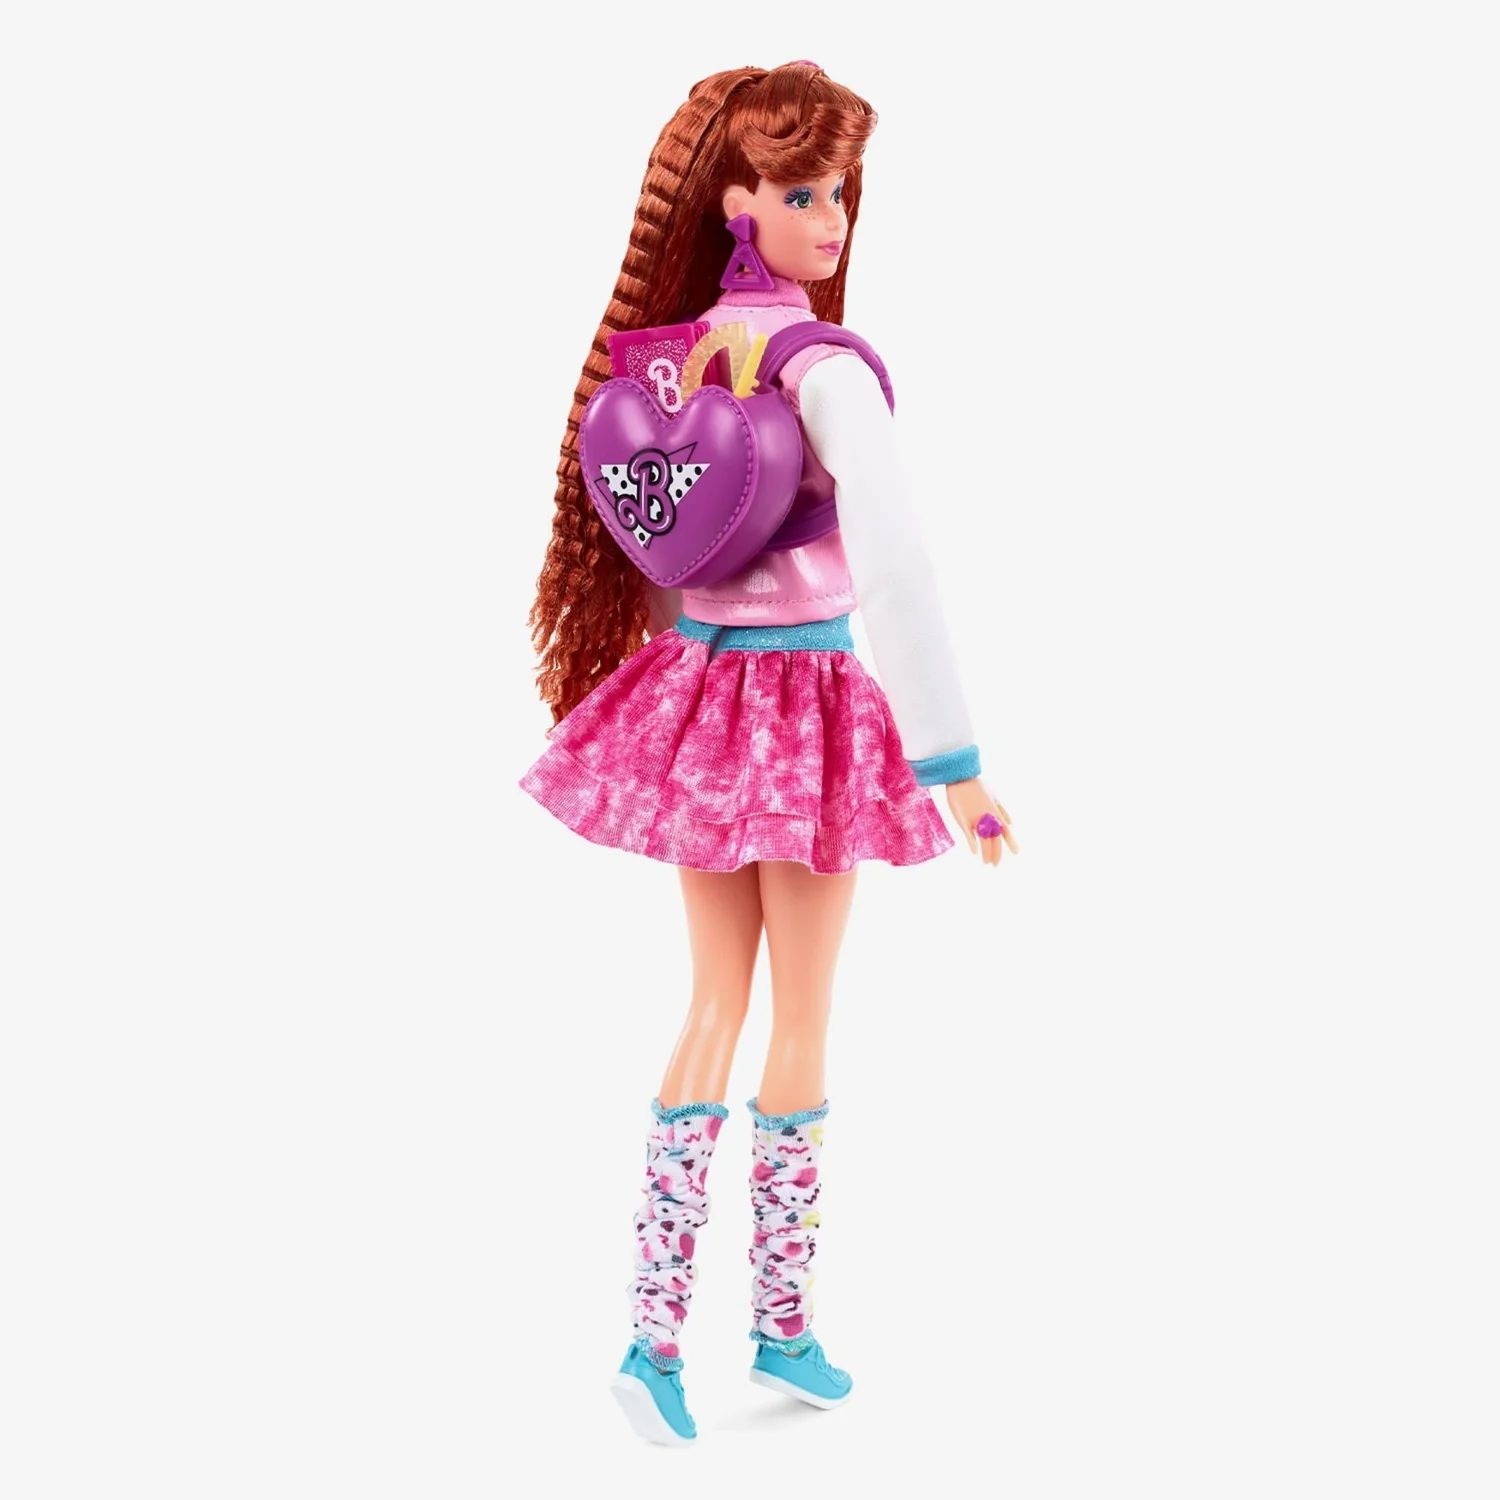 Кукла Barbie Rewind Школа в стиле 80-х годов HBY13 HBY13 - фото 3